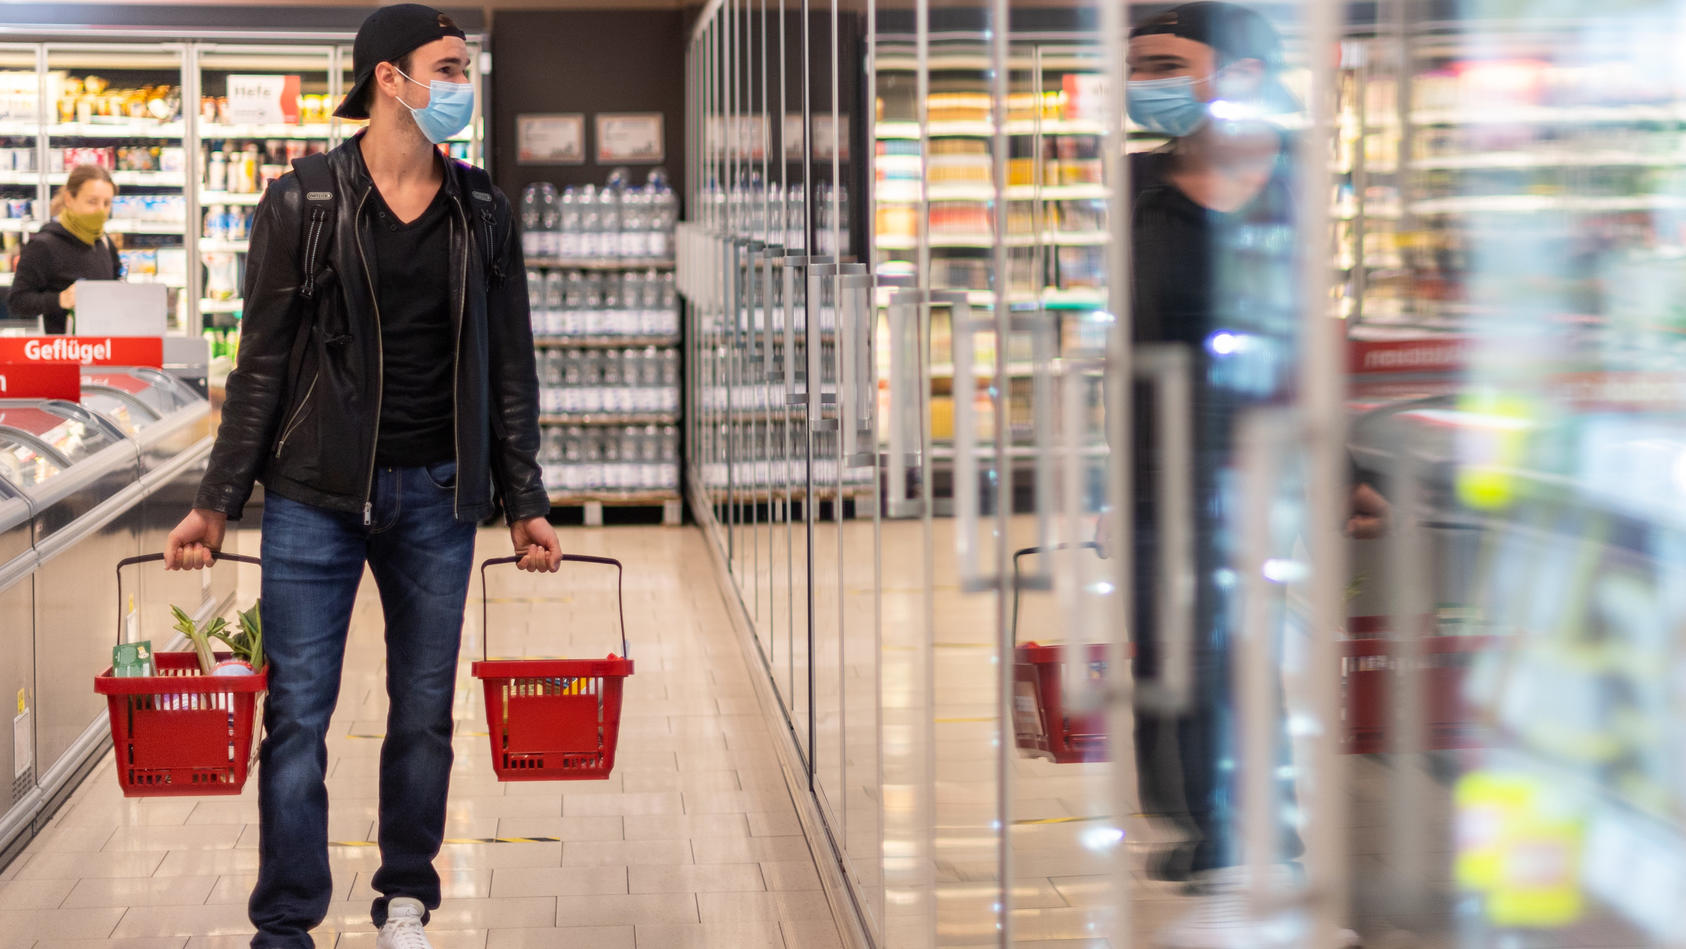 ARCHIV - 20.04.2020, Sachsen, Dresden: Ein Kunde geht in einem Supermarkt einkaufen und trägt dabei eine Maske. Die staatlich verordnete Maskenpflicht beim Einkaufen fällt in weiten Teilen Deutschlands weg, wenn die Geschäfte am Montag öffnen - gewis